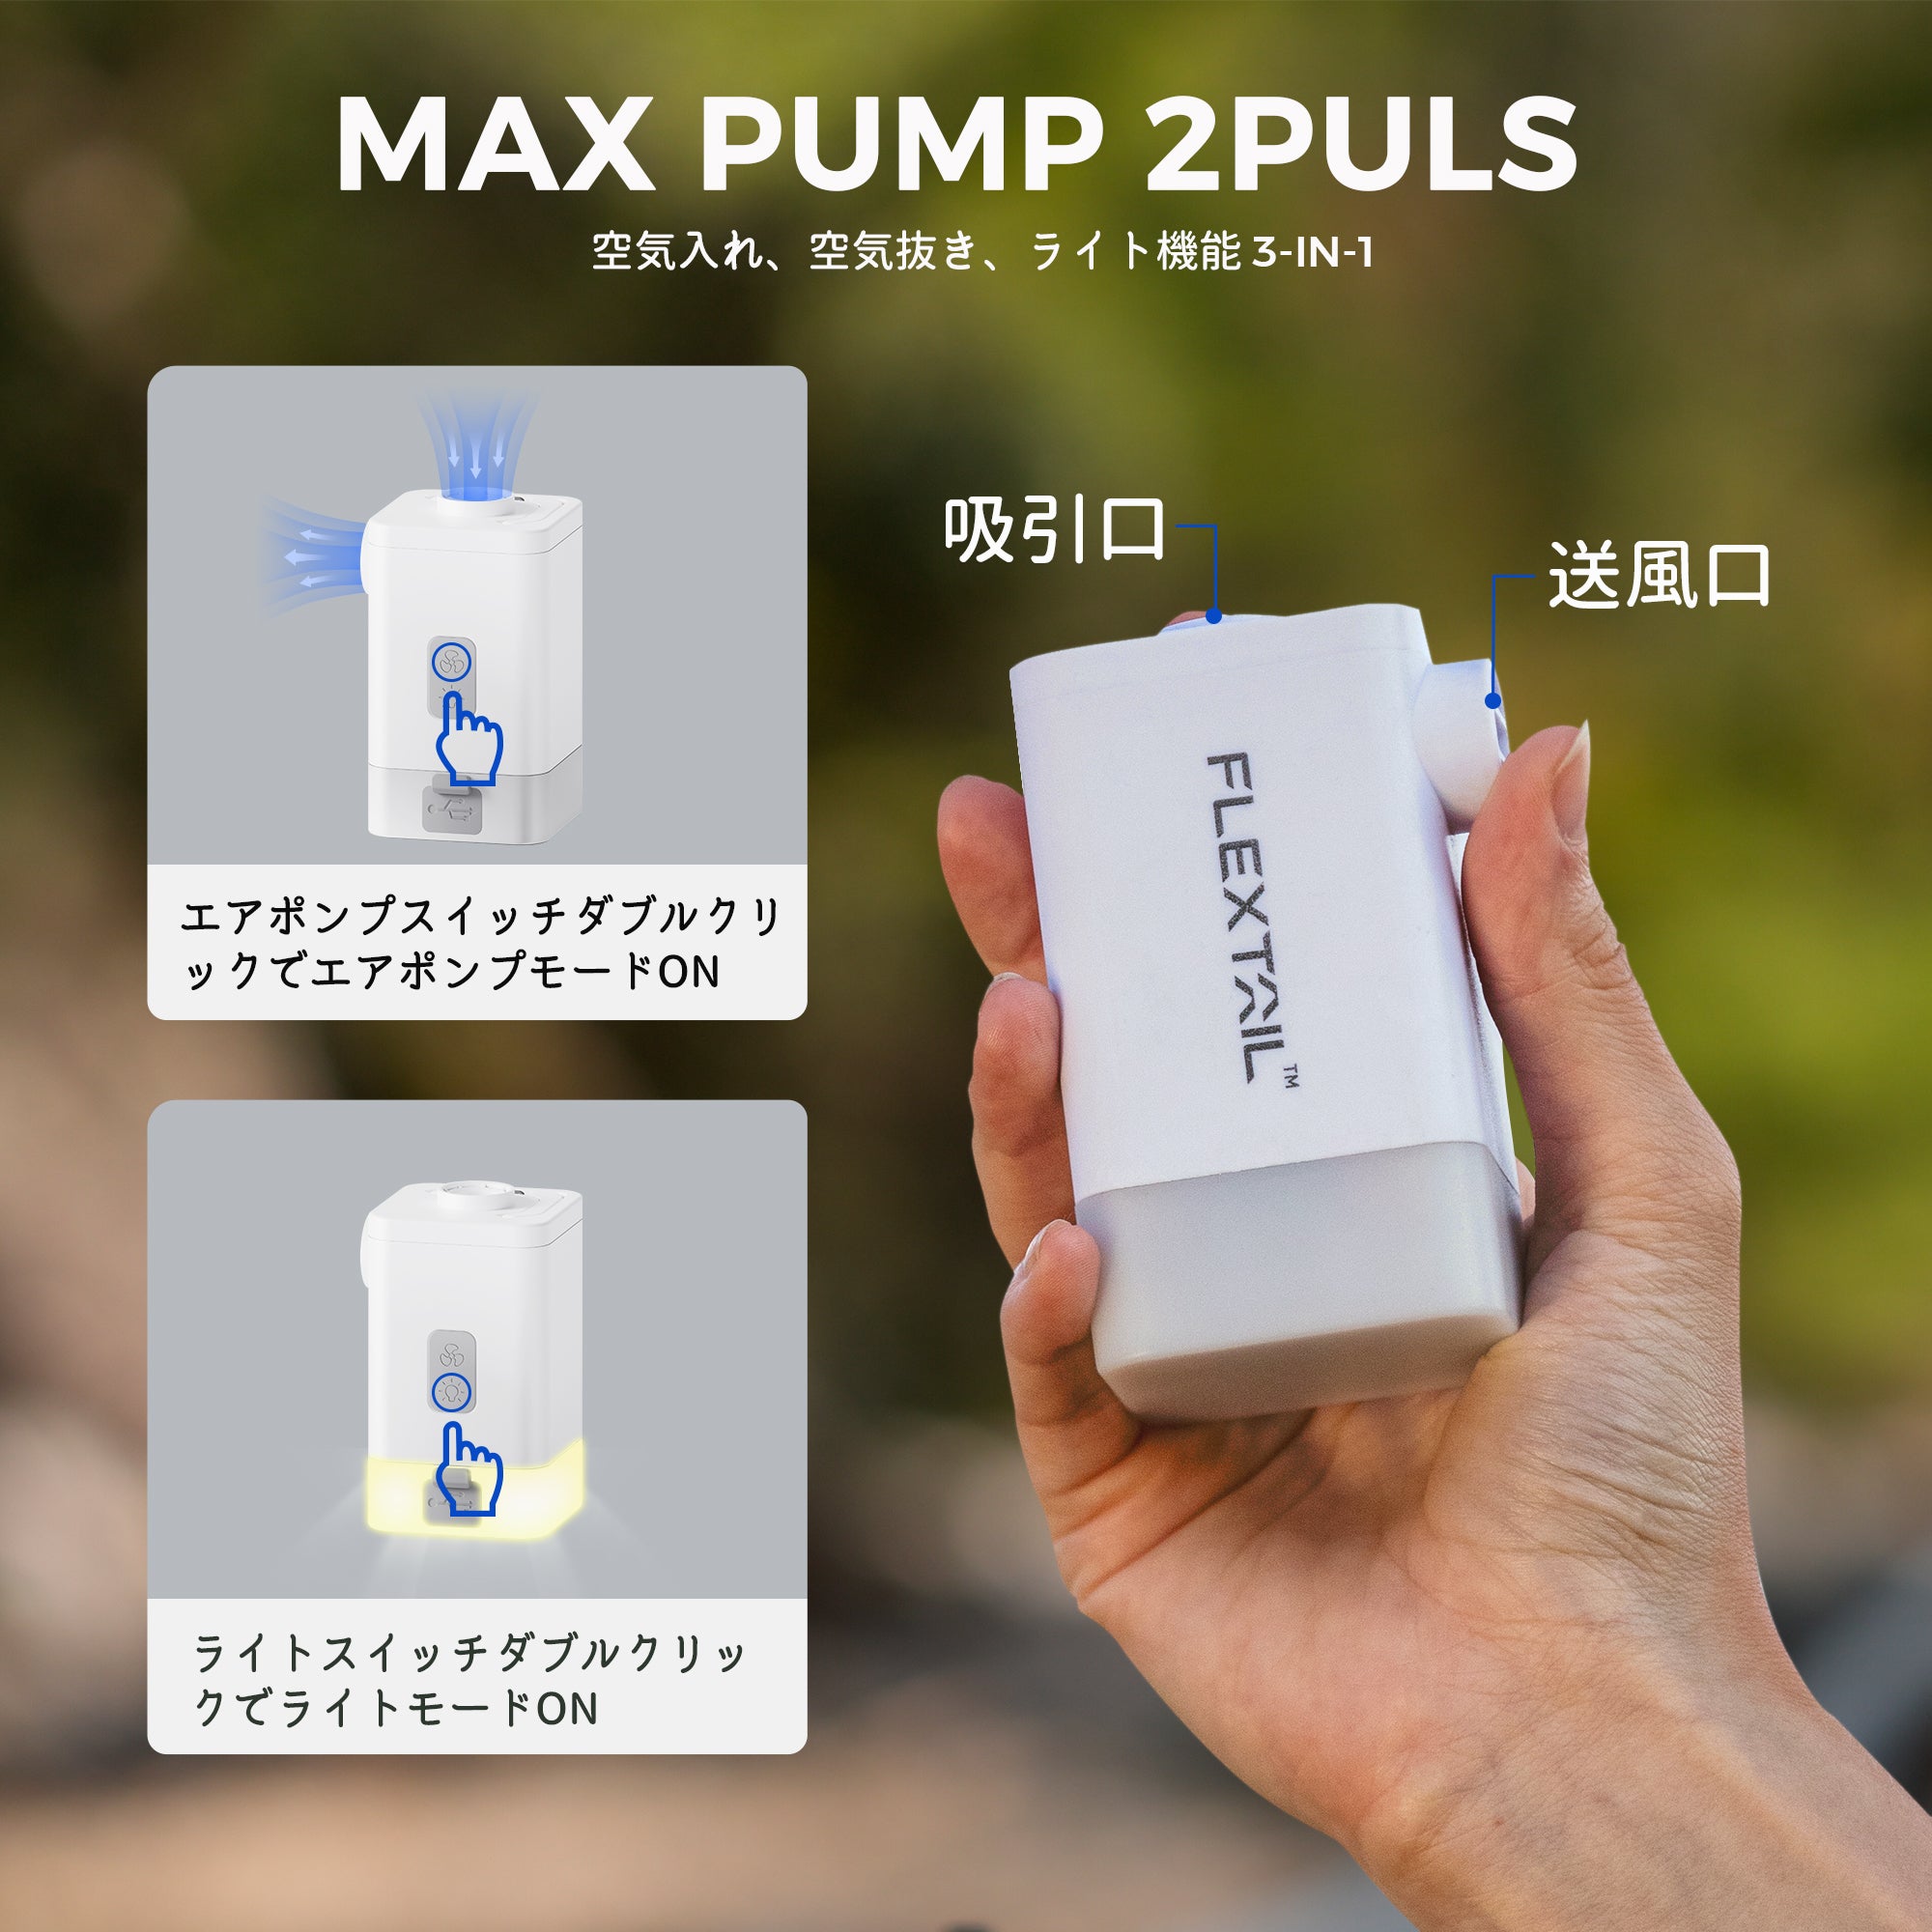 MAX PUMP 2PULS-一台で4つの機能、どこでも使える充電式エアポンプ – FLEXTAIL-JP